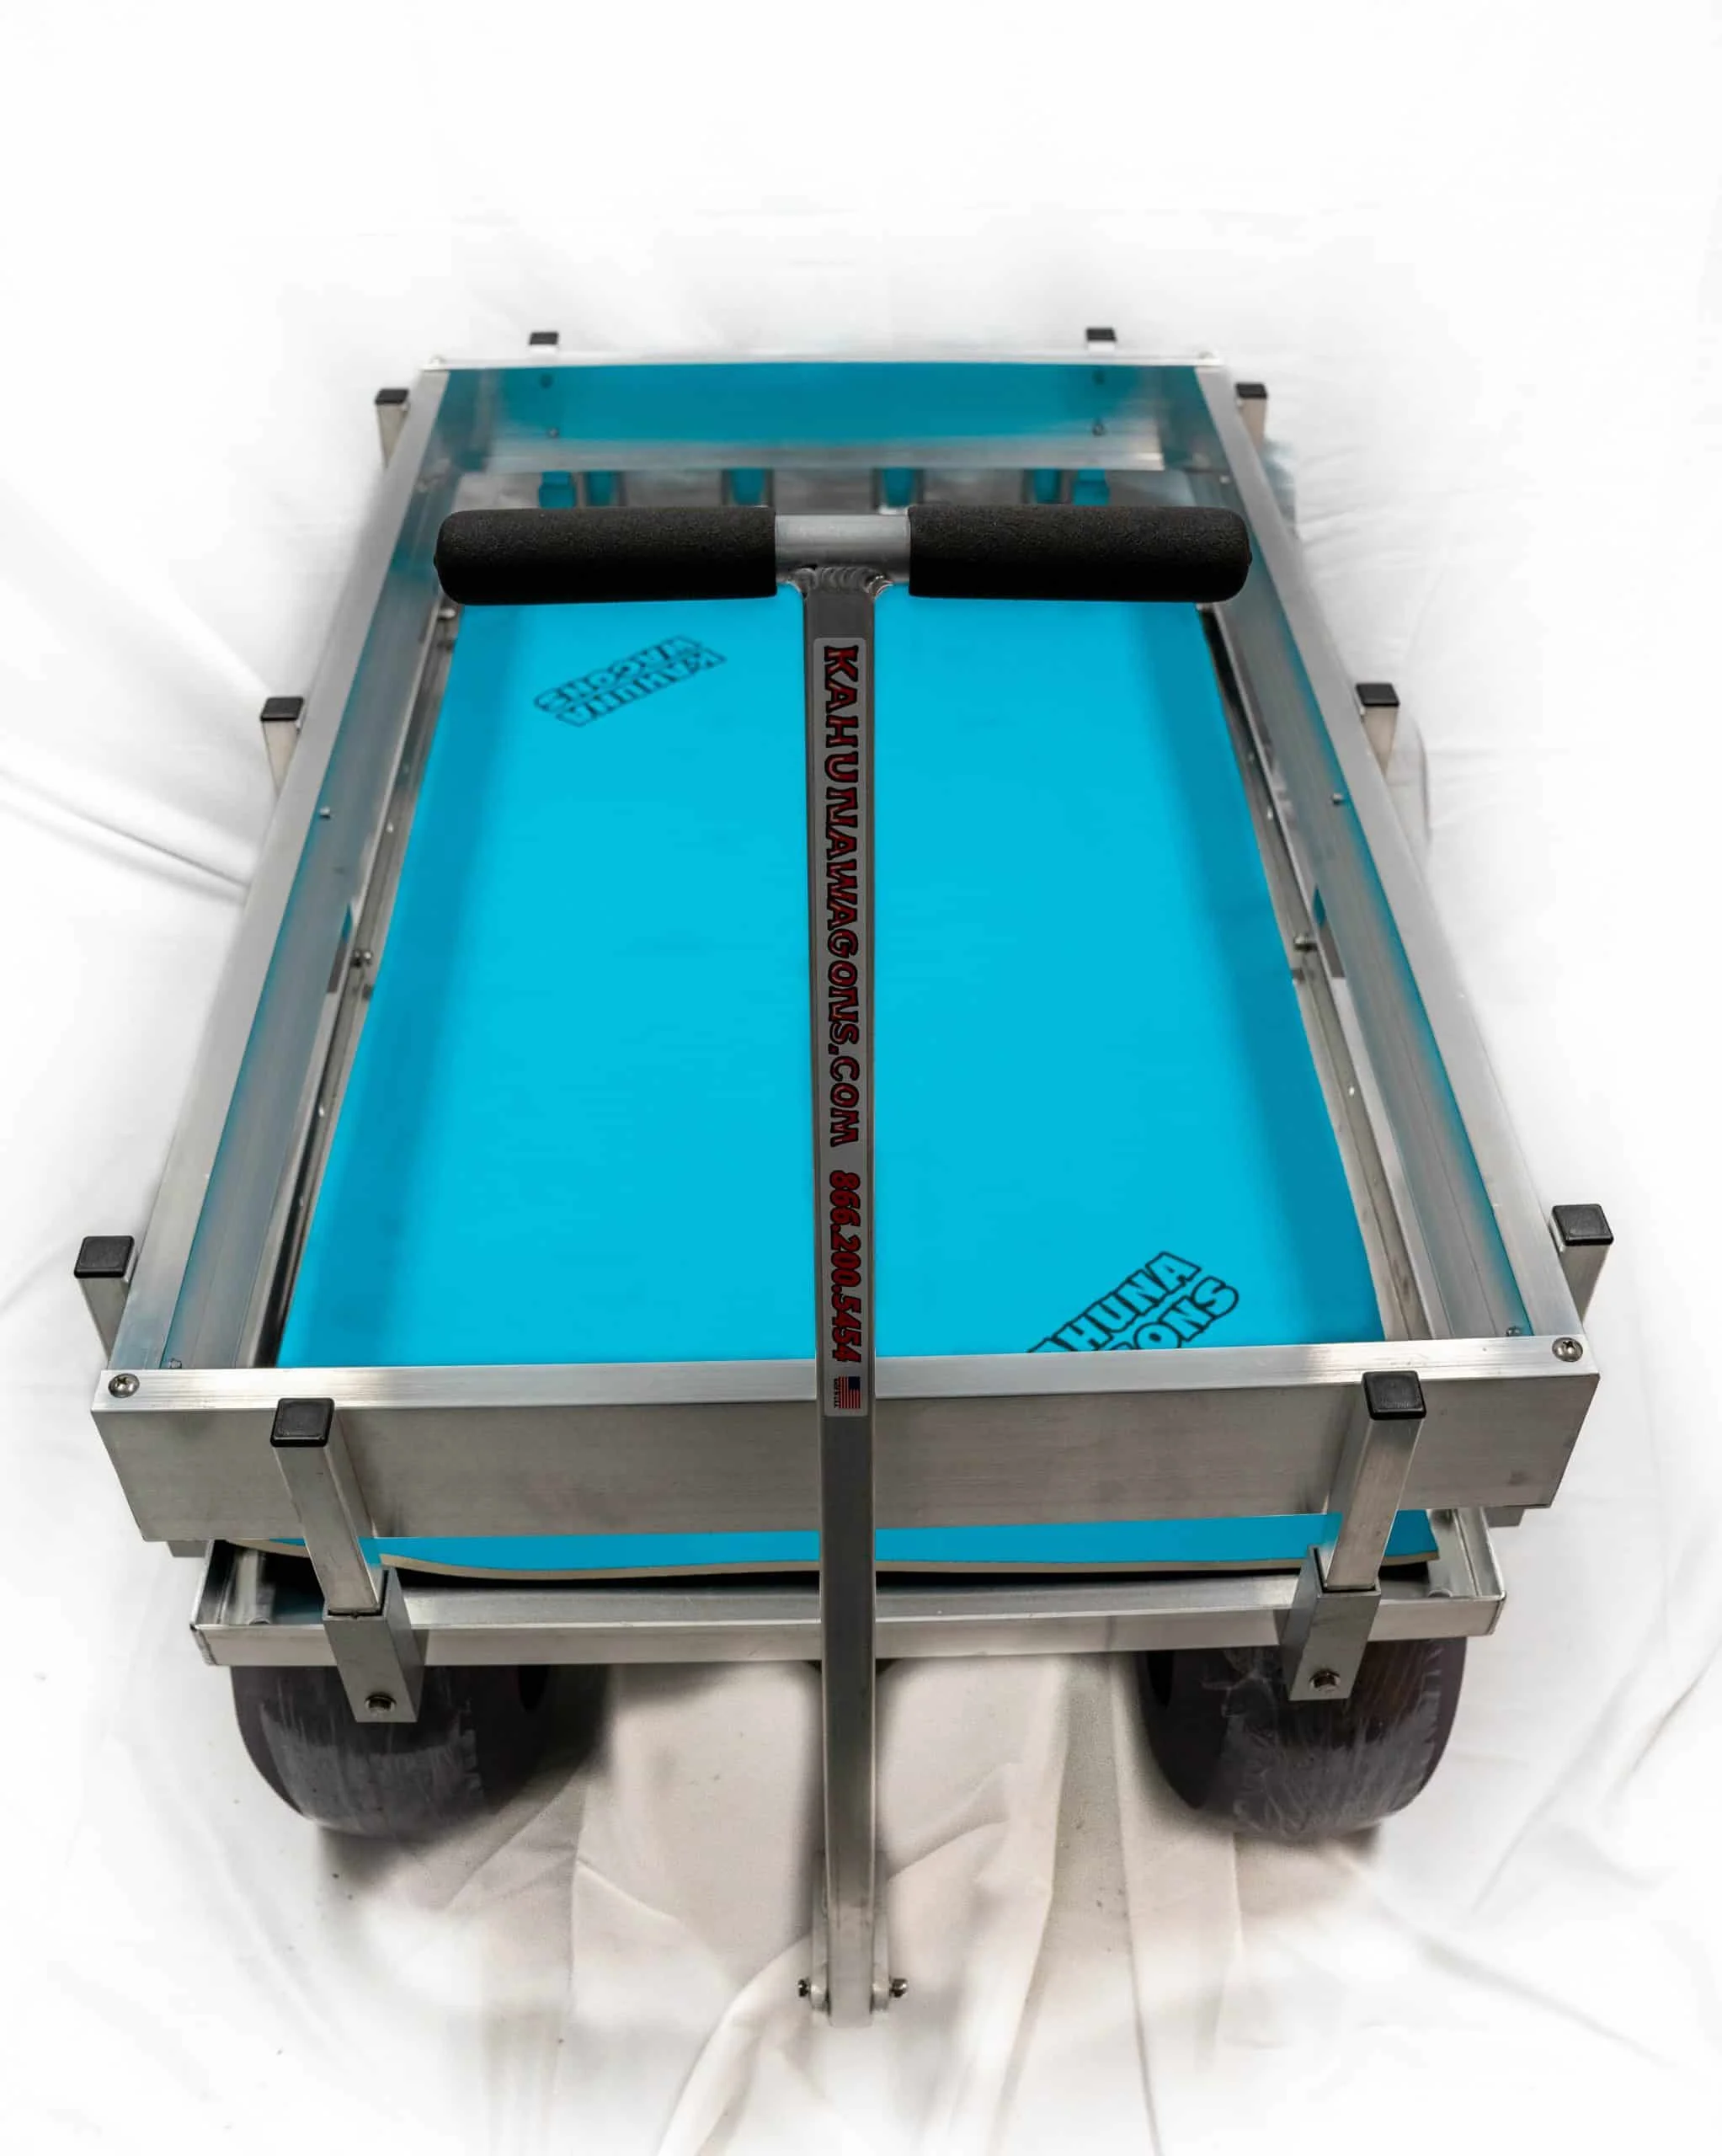 teal blue neoprene deck mat inside aluminum wagon